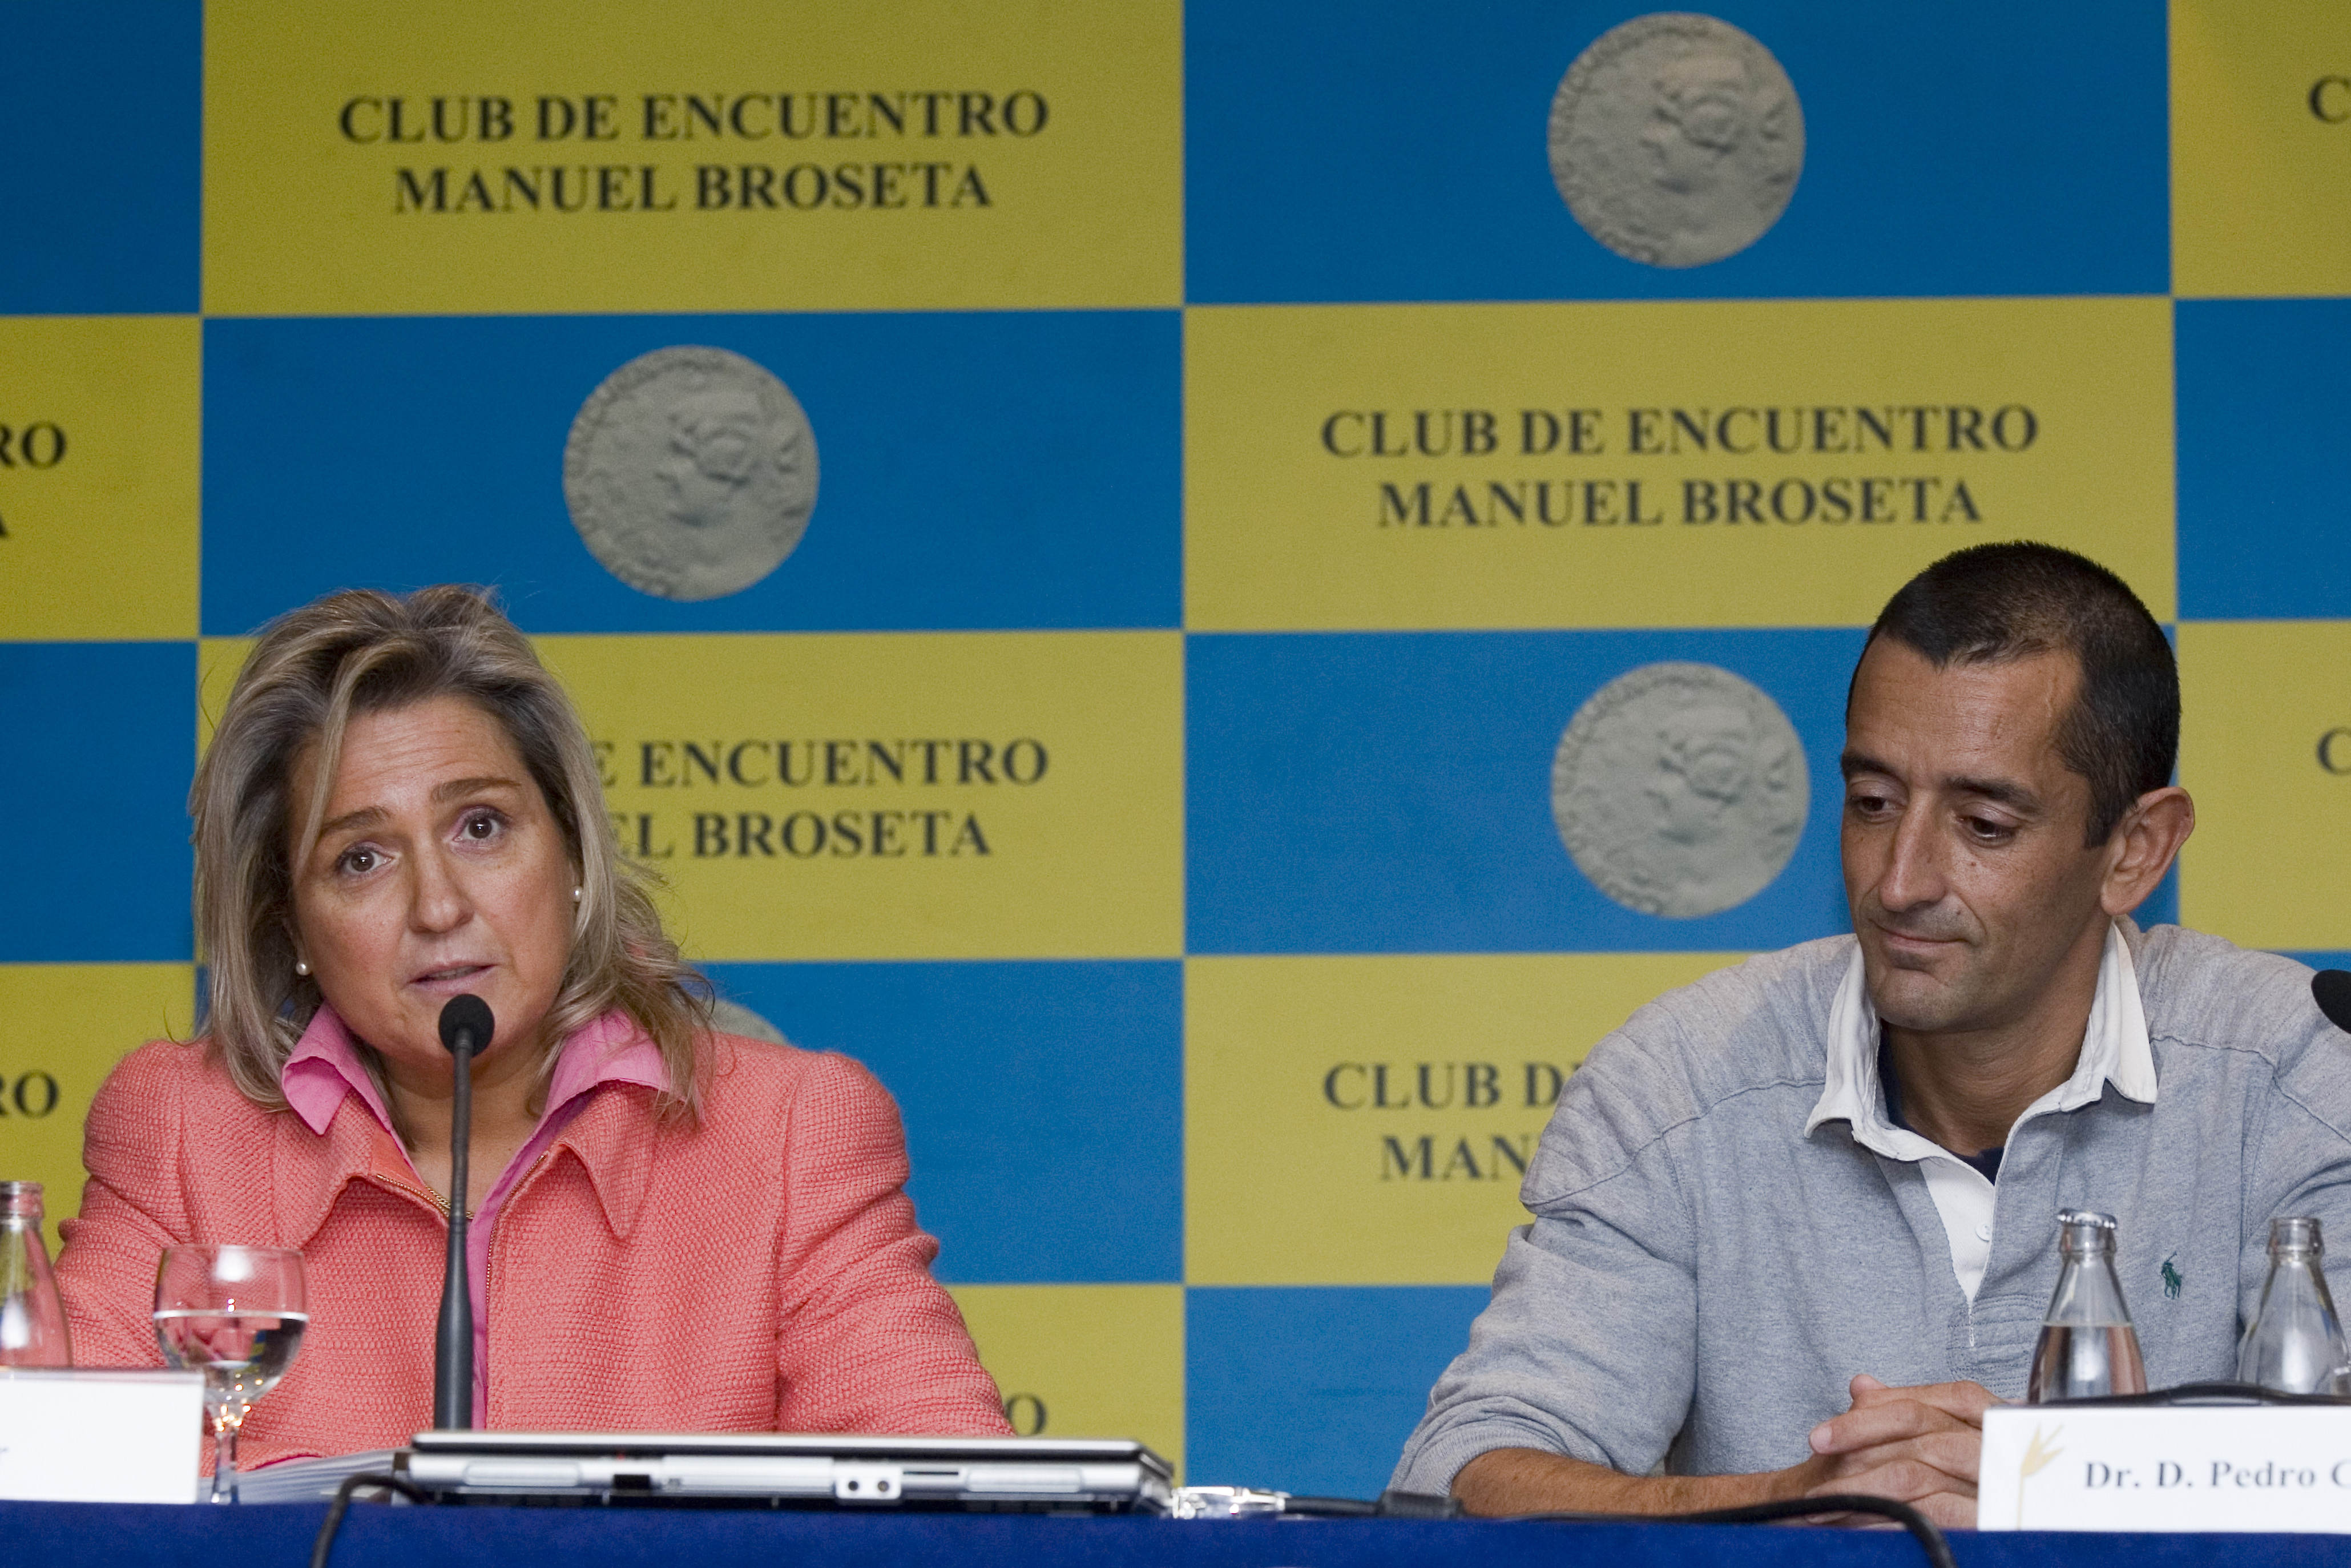 Club de encuentro Manuel Broseta